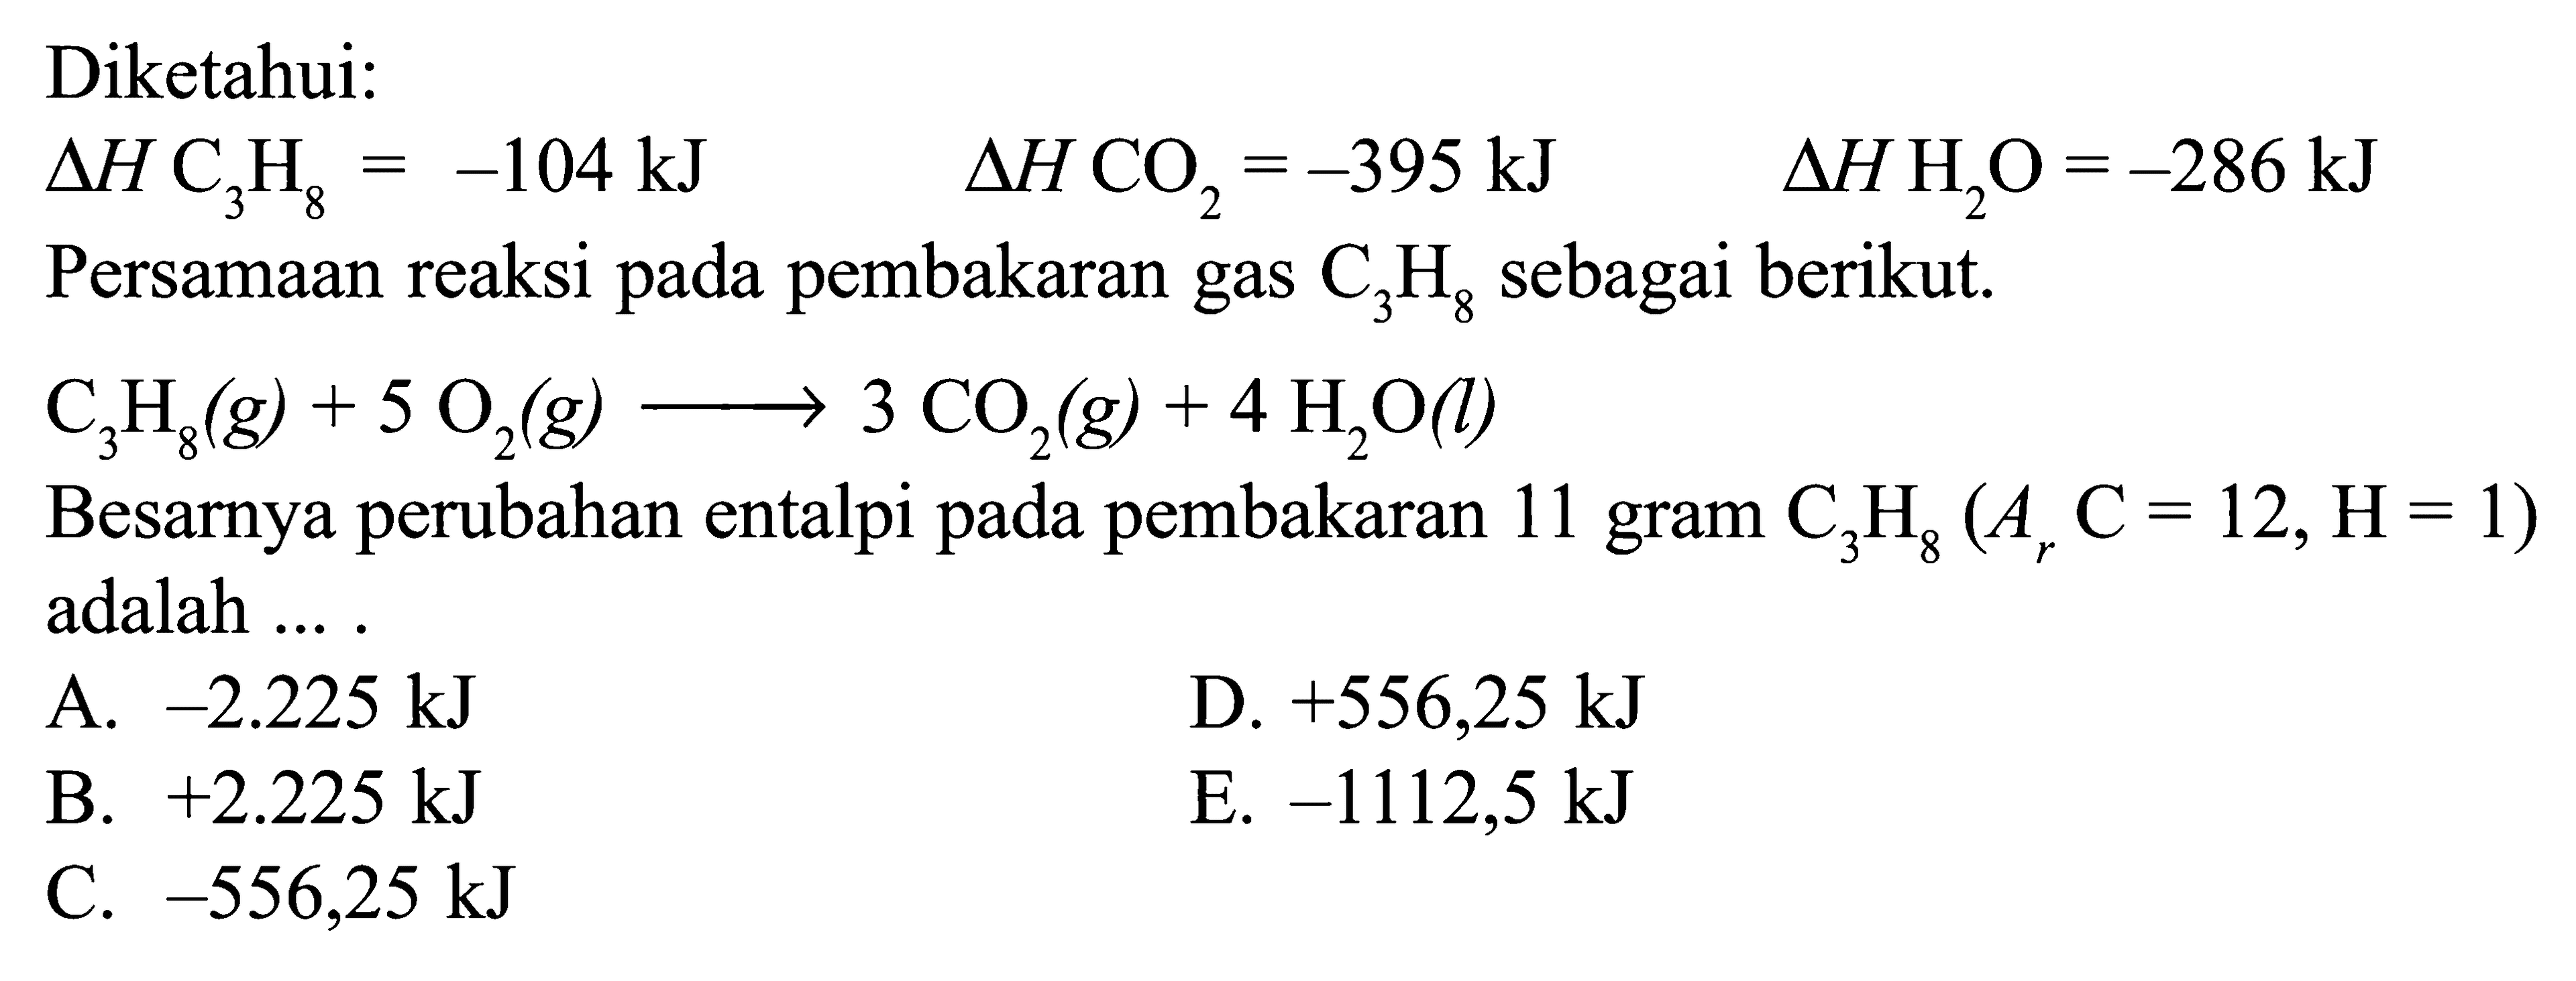 Diketahui: delta H C3 H8=-104 kJ delta H CO2=-395 kJ delta H H2 O=-286 kJ  Persamaan reaksi pada pembakaran gas C3H8 sebagai berikut.  C3H8(g) + 5O2(g) -> 3CO2(g) + 4H2O(l) Besarnya perubahan entalpi pada pembakaran 11 gram C3H8(Ar C=12, H=1) adalah ... .